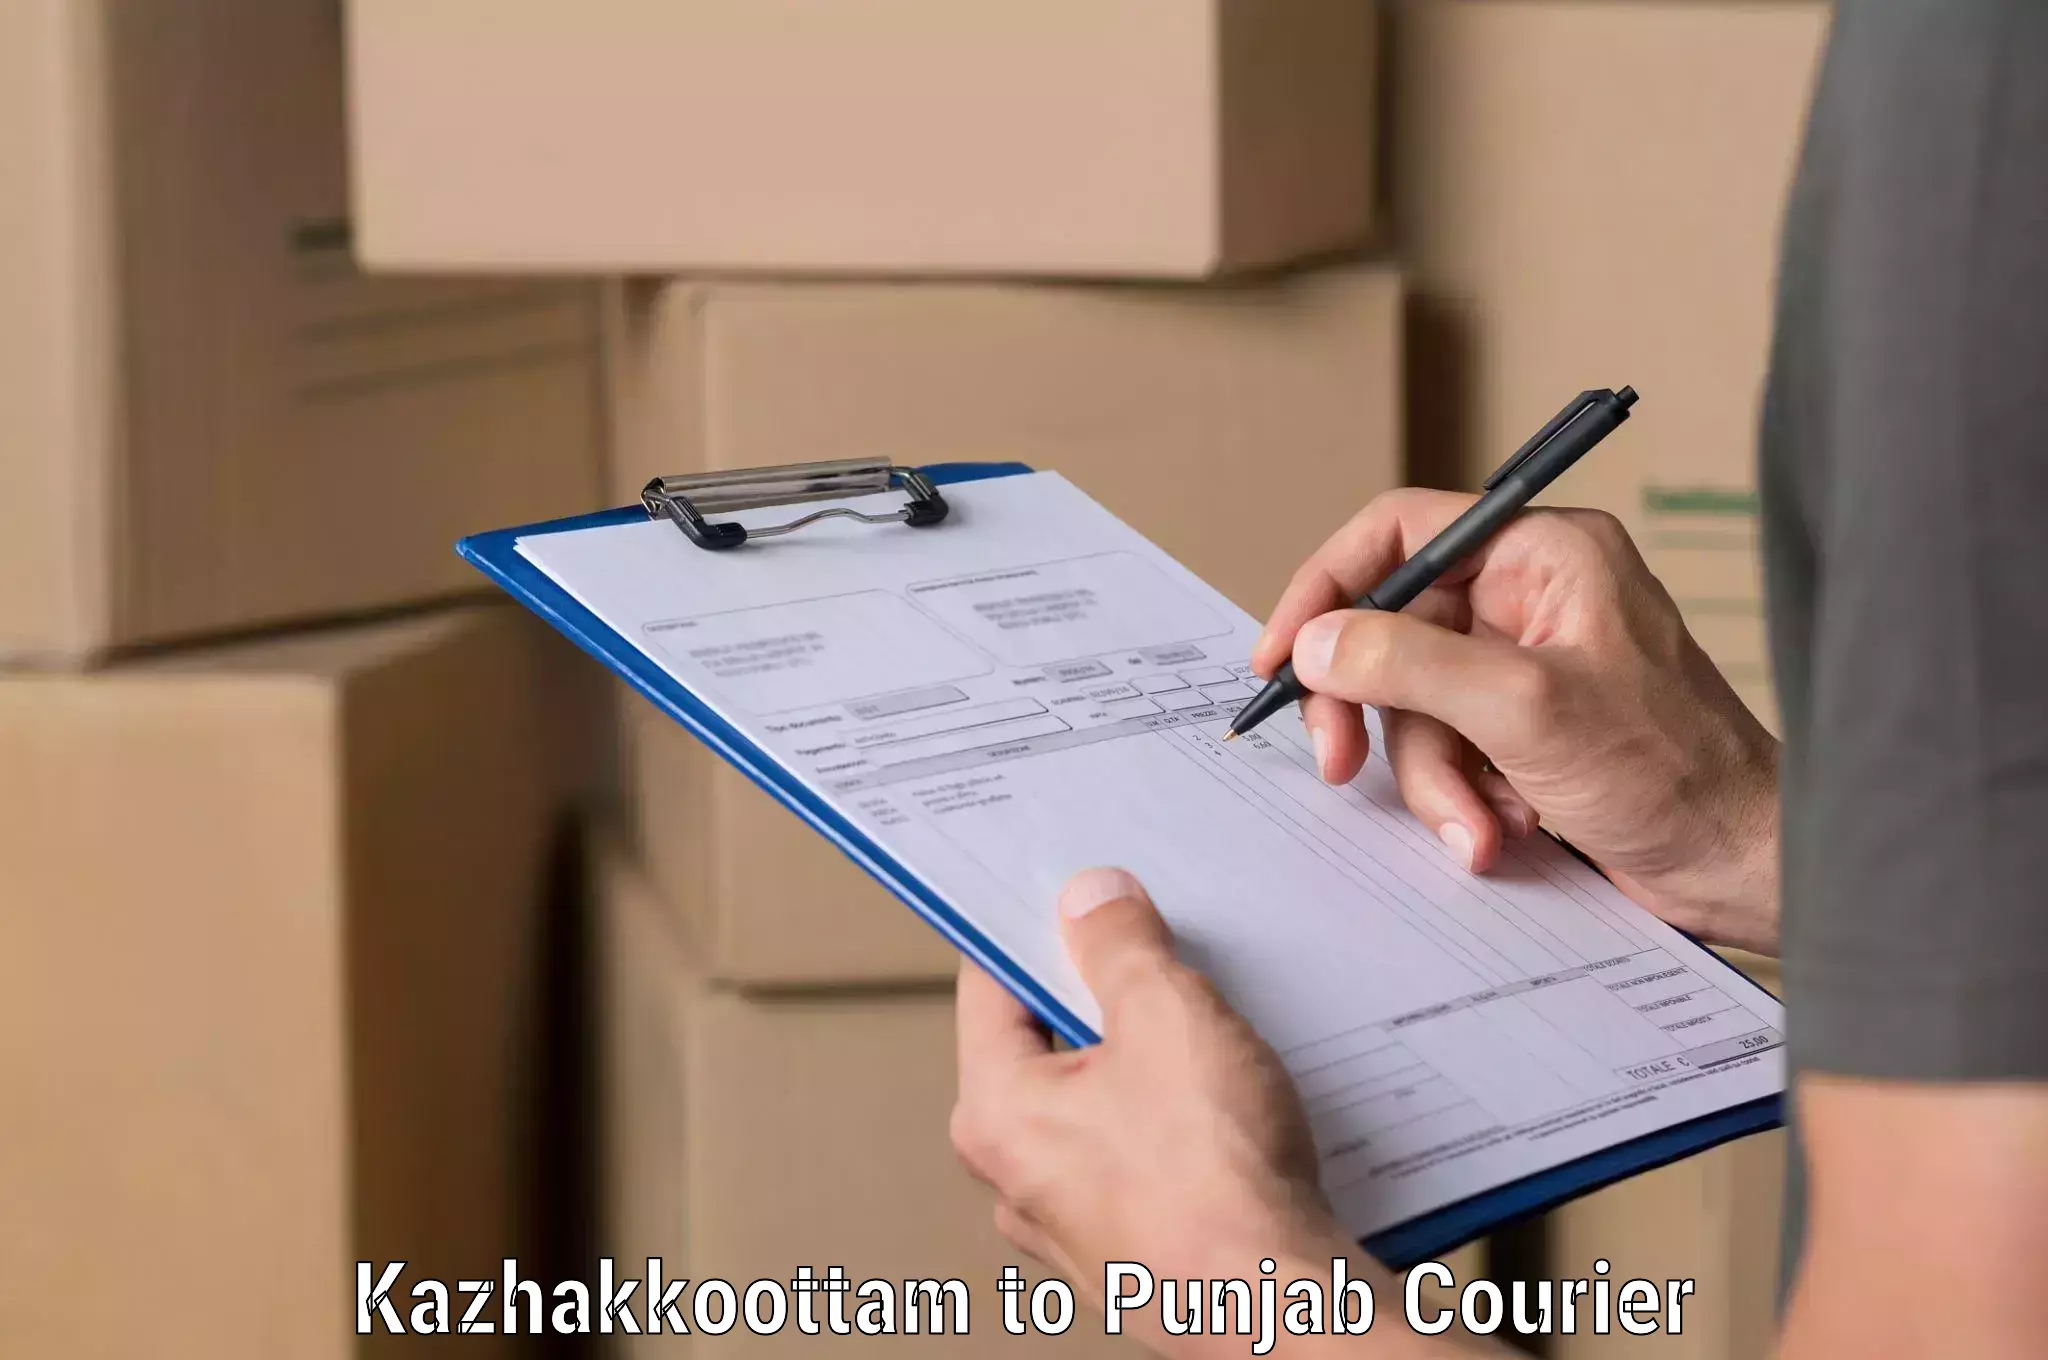 Personal parcel delivery in Kazhakkoottam to Zira